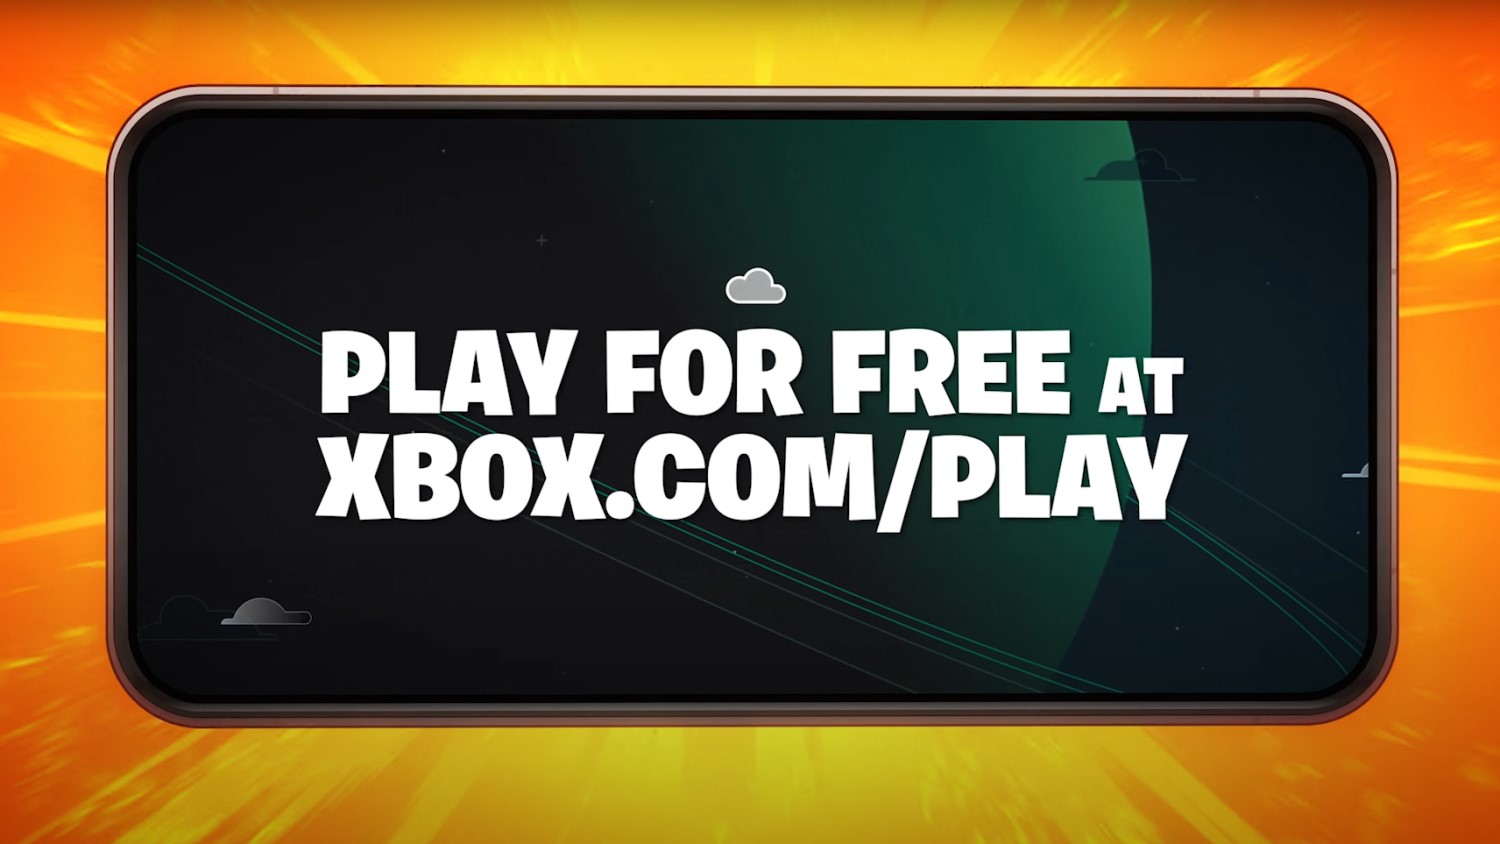 Fortnite dribla Apple e retorna de graça ao iPhone via Xbox Cloud